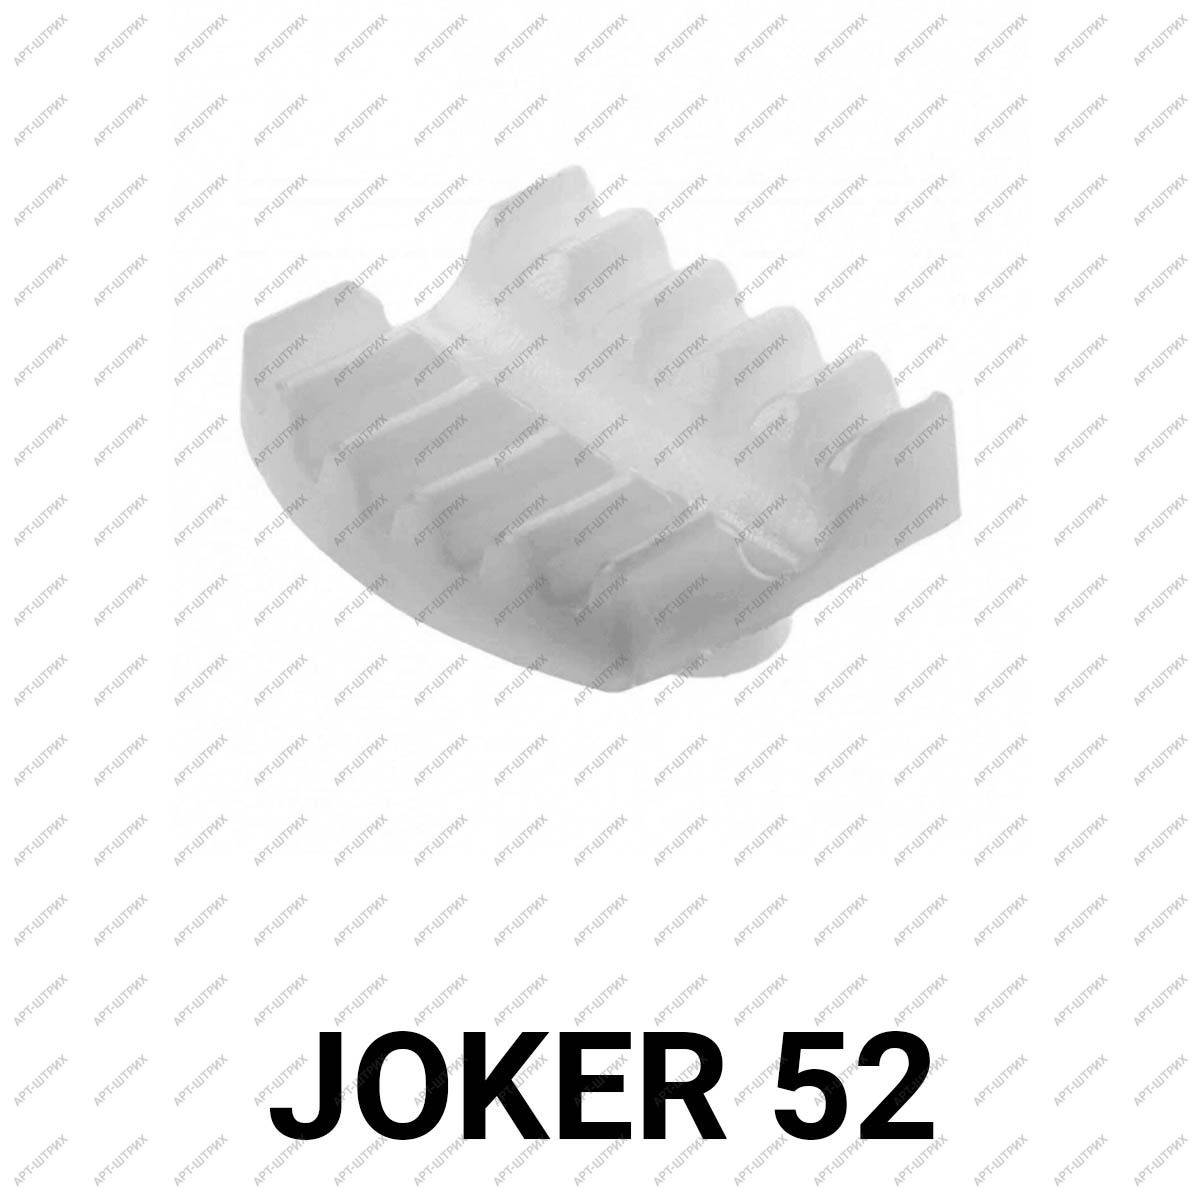 Joker 52 Вкладка для стекла и панелей белая